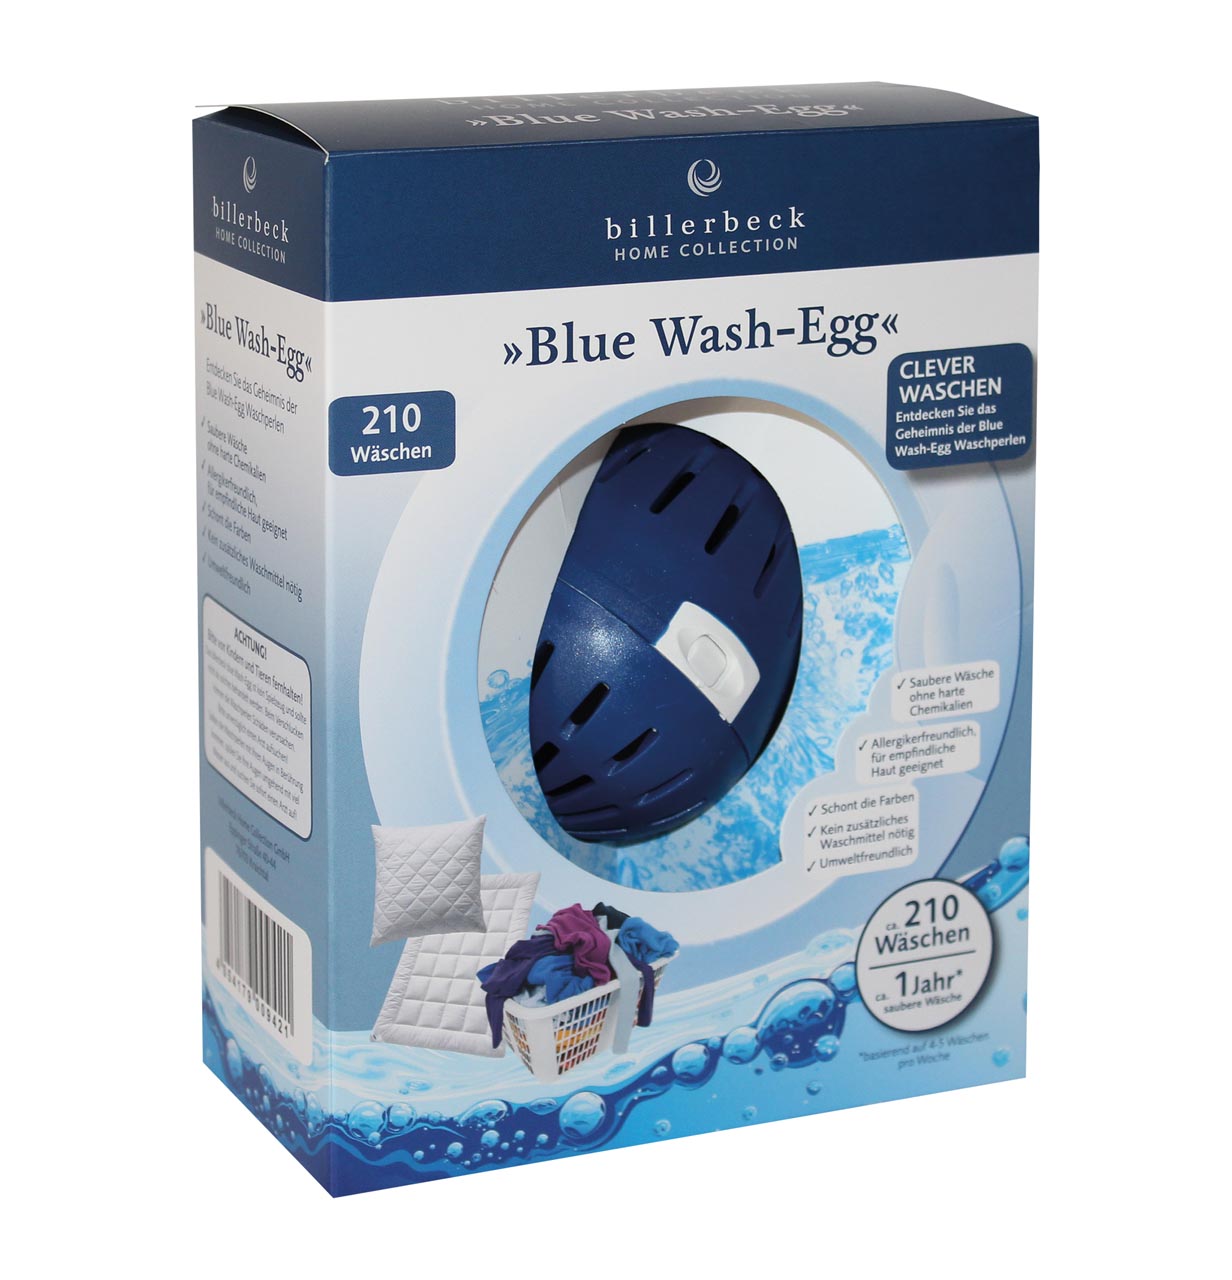 billerbeck Blue Wash Egg Bio Waschmittel Verpackungskarton

